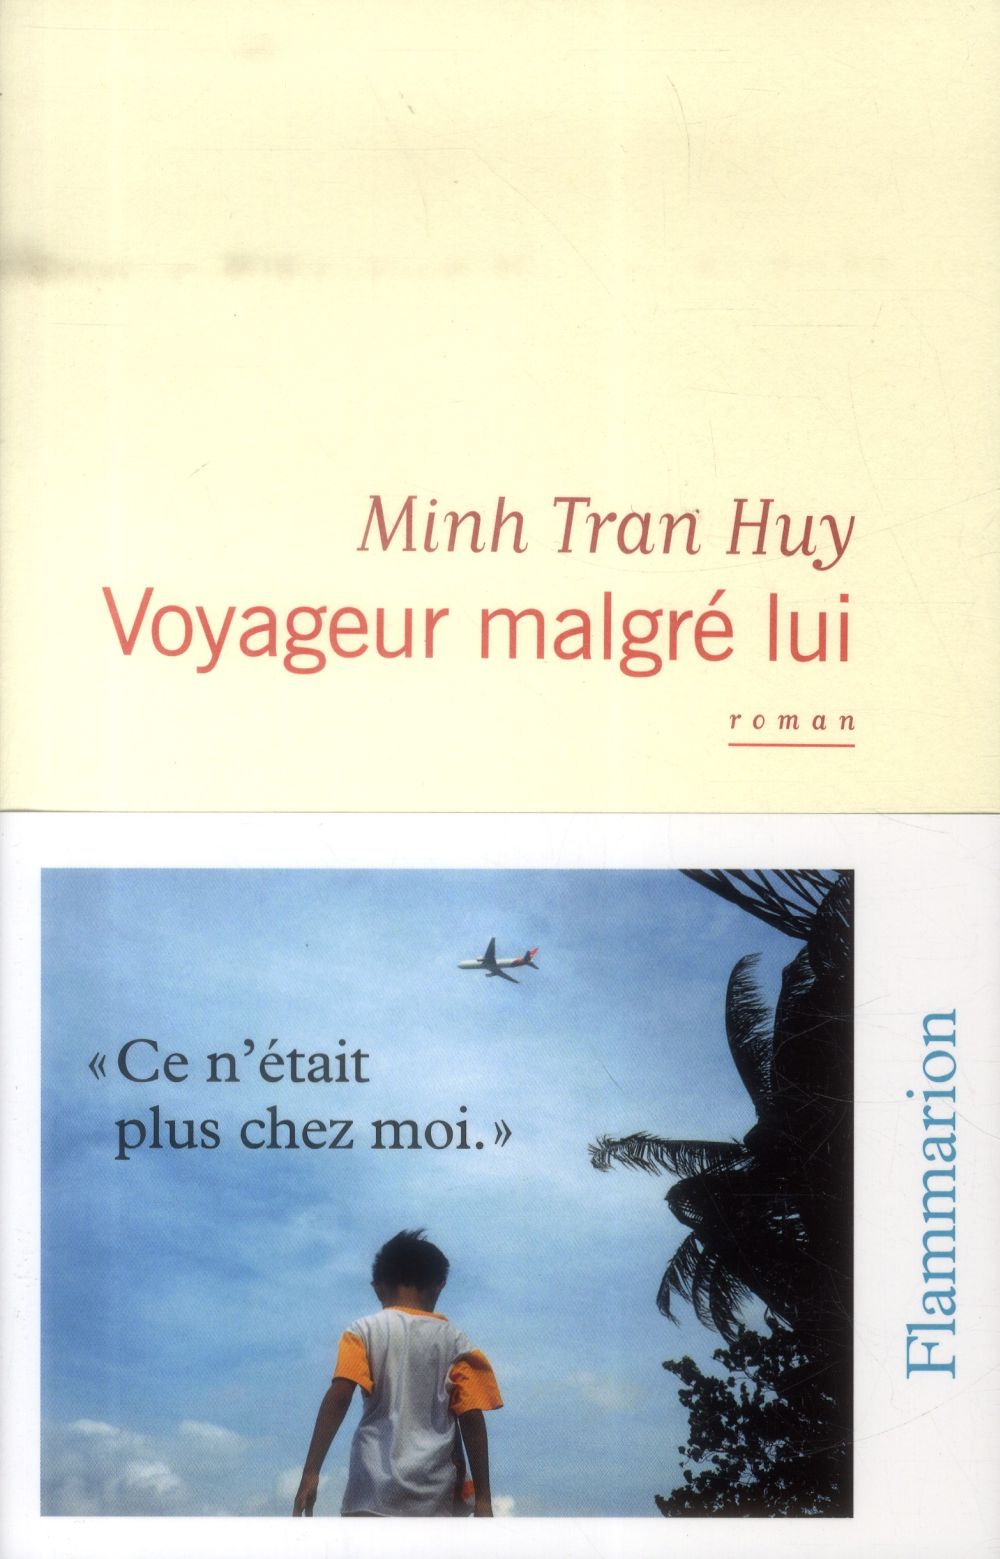 La riposte de Minh Tran Huy aux Explorateurs